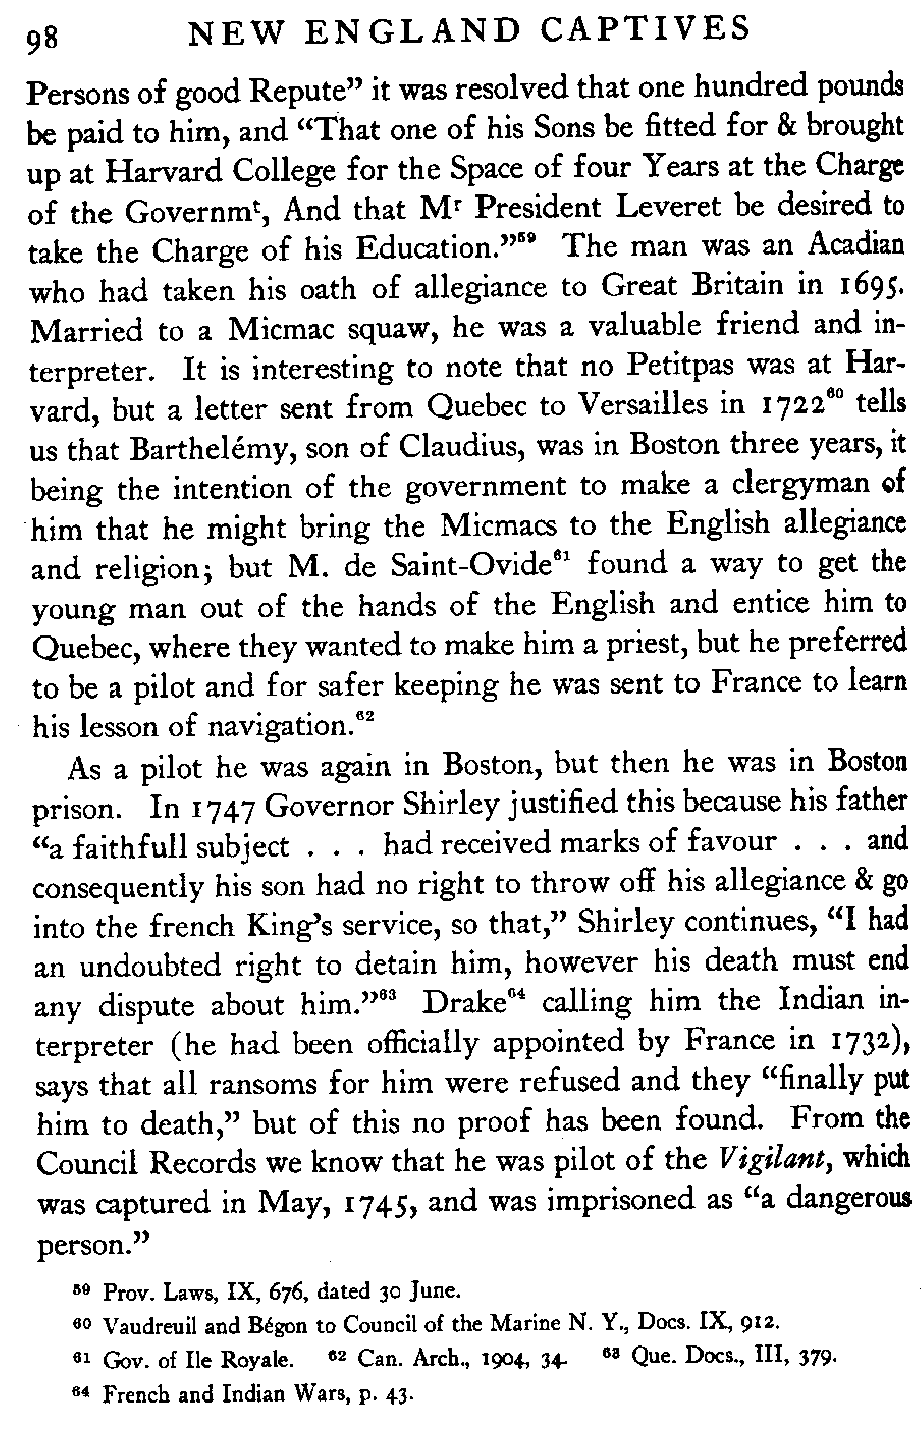 Page 98 about Claude Petitpas II and his son Barthélemy Petitpas